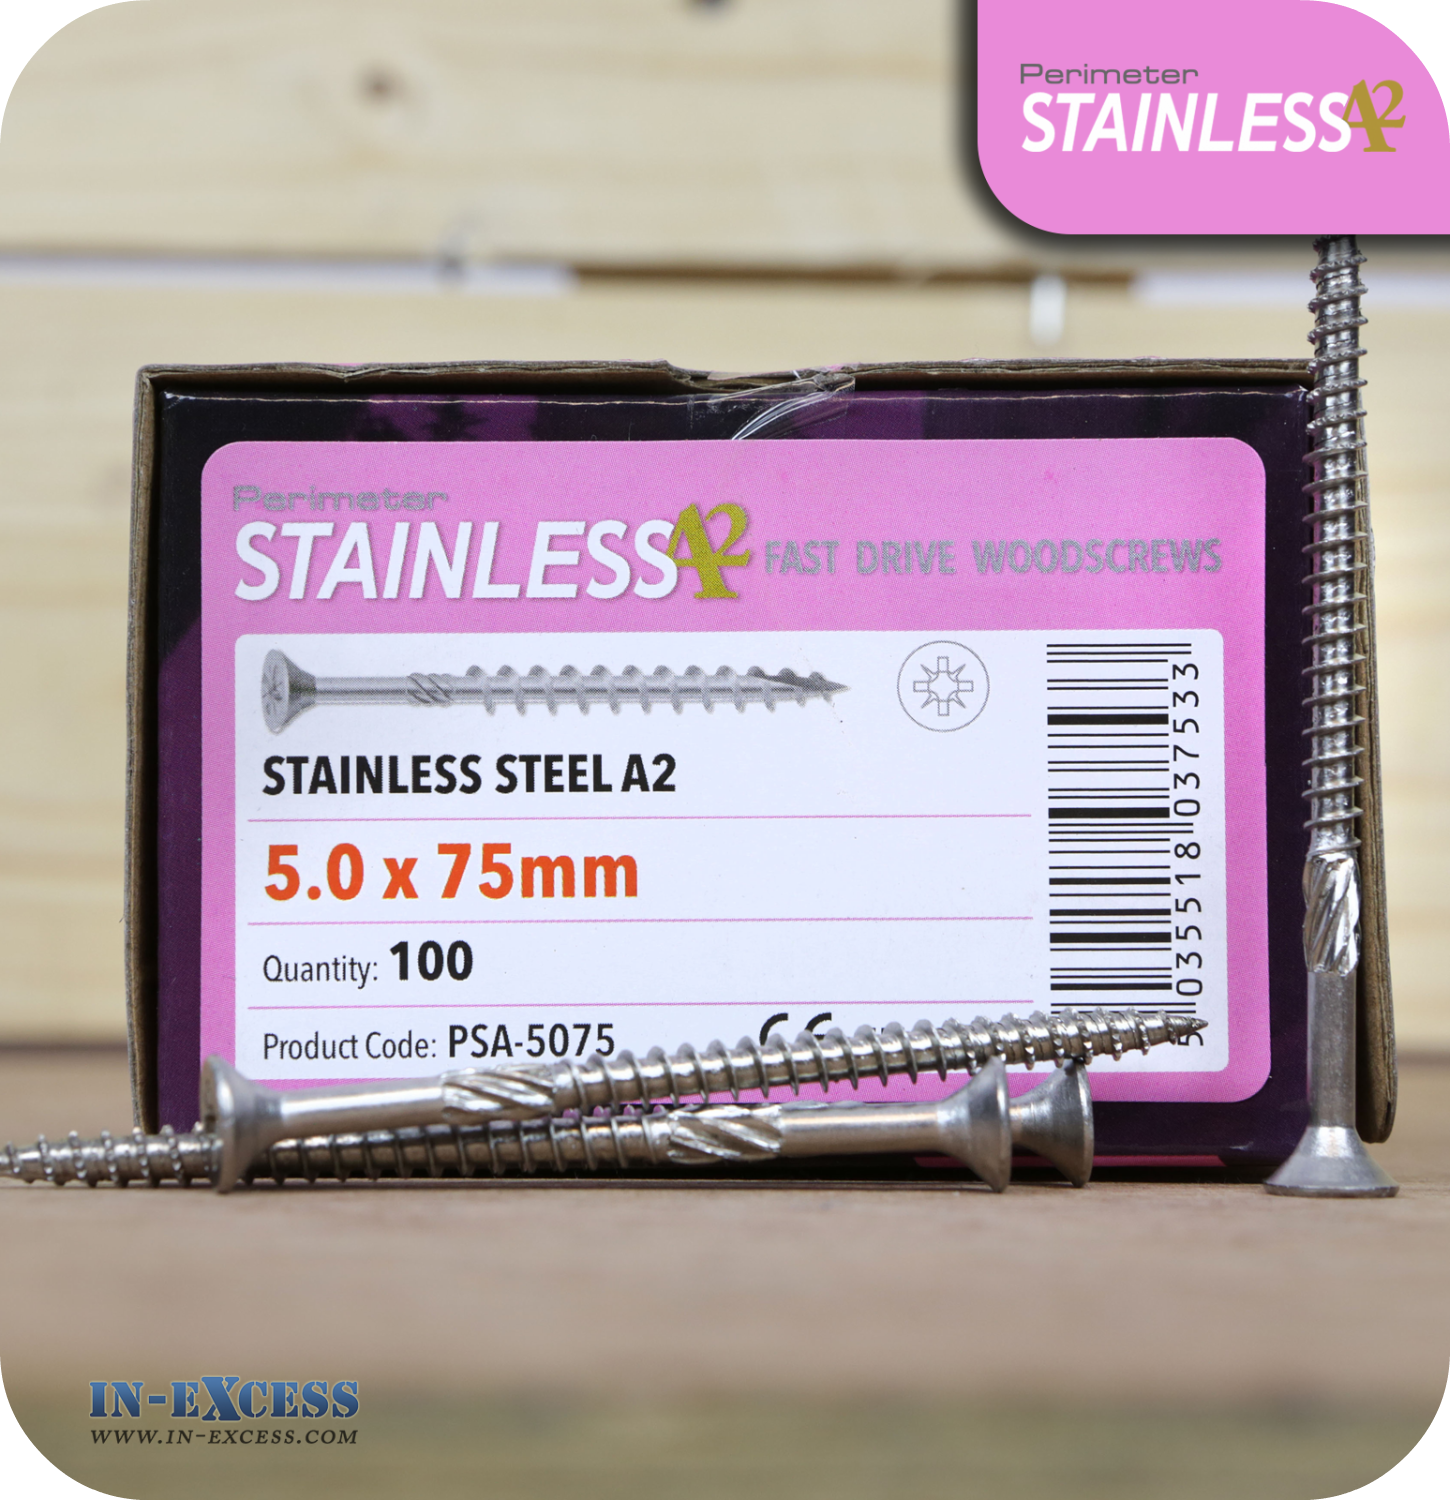 Perimeter Stainless Steel A2 Torx Wood Screws 5.0 x 75mm - Pack of 100